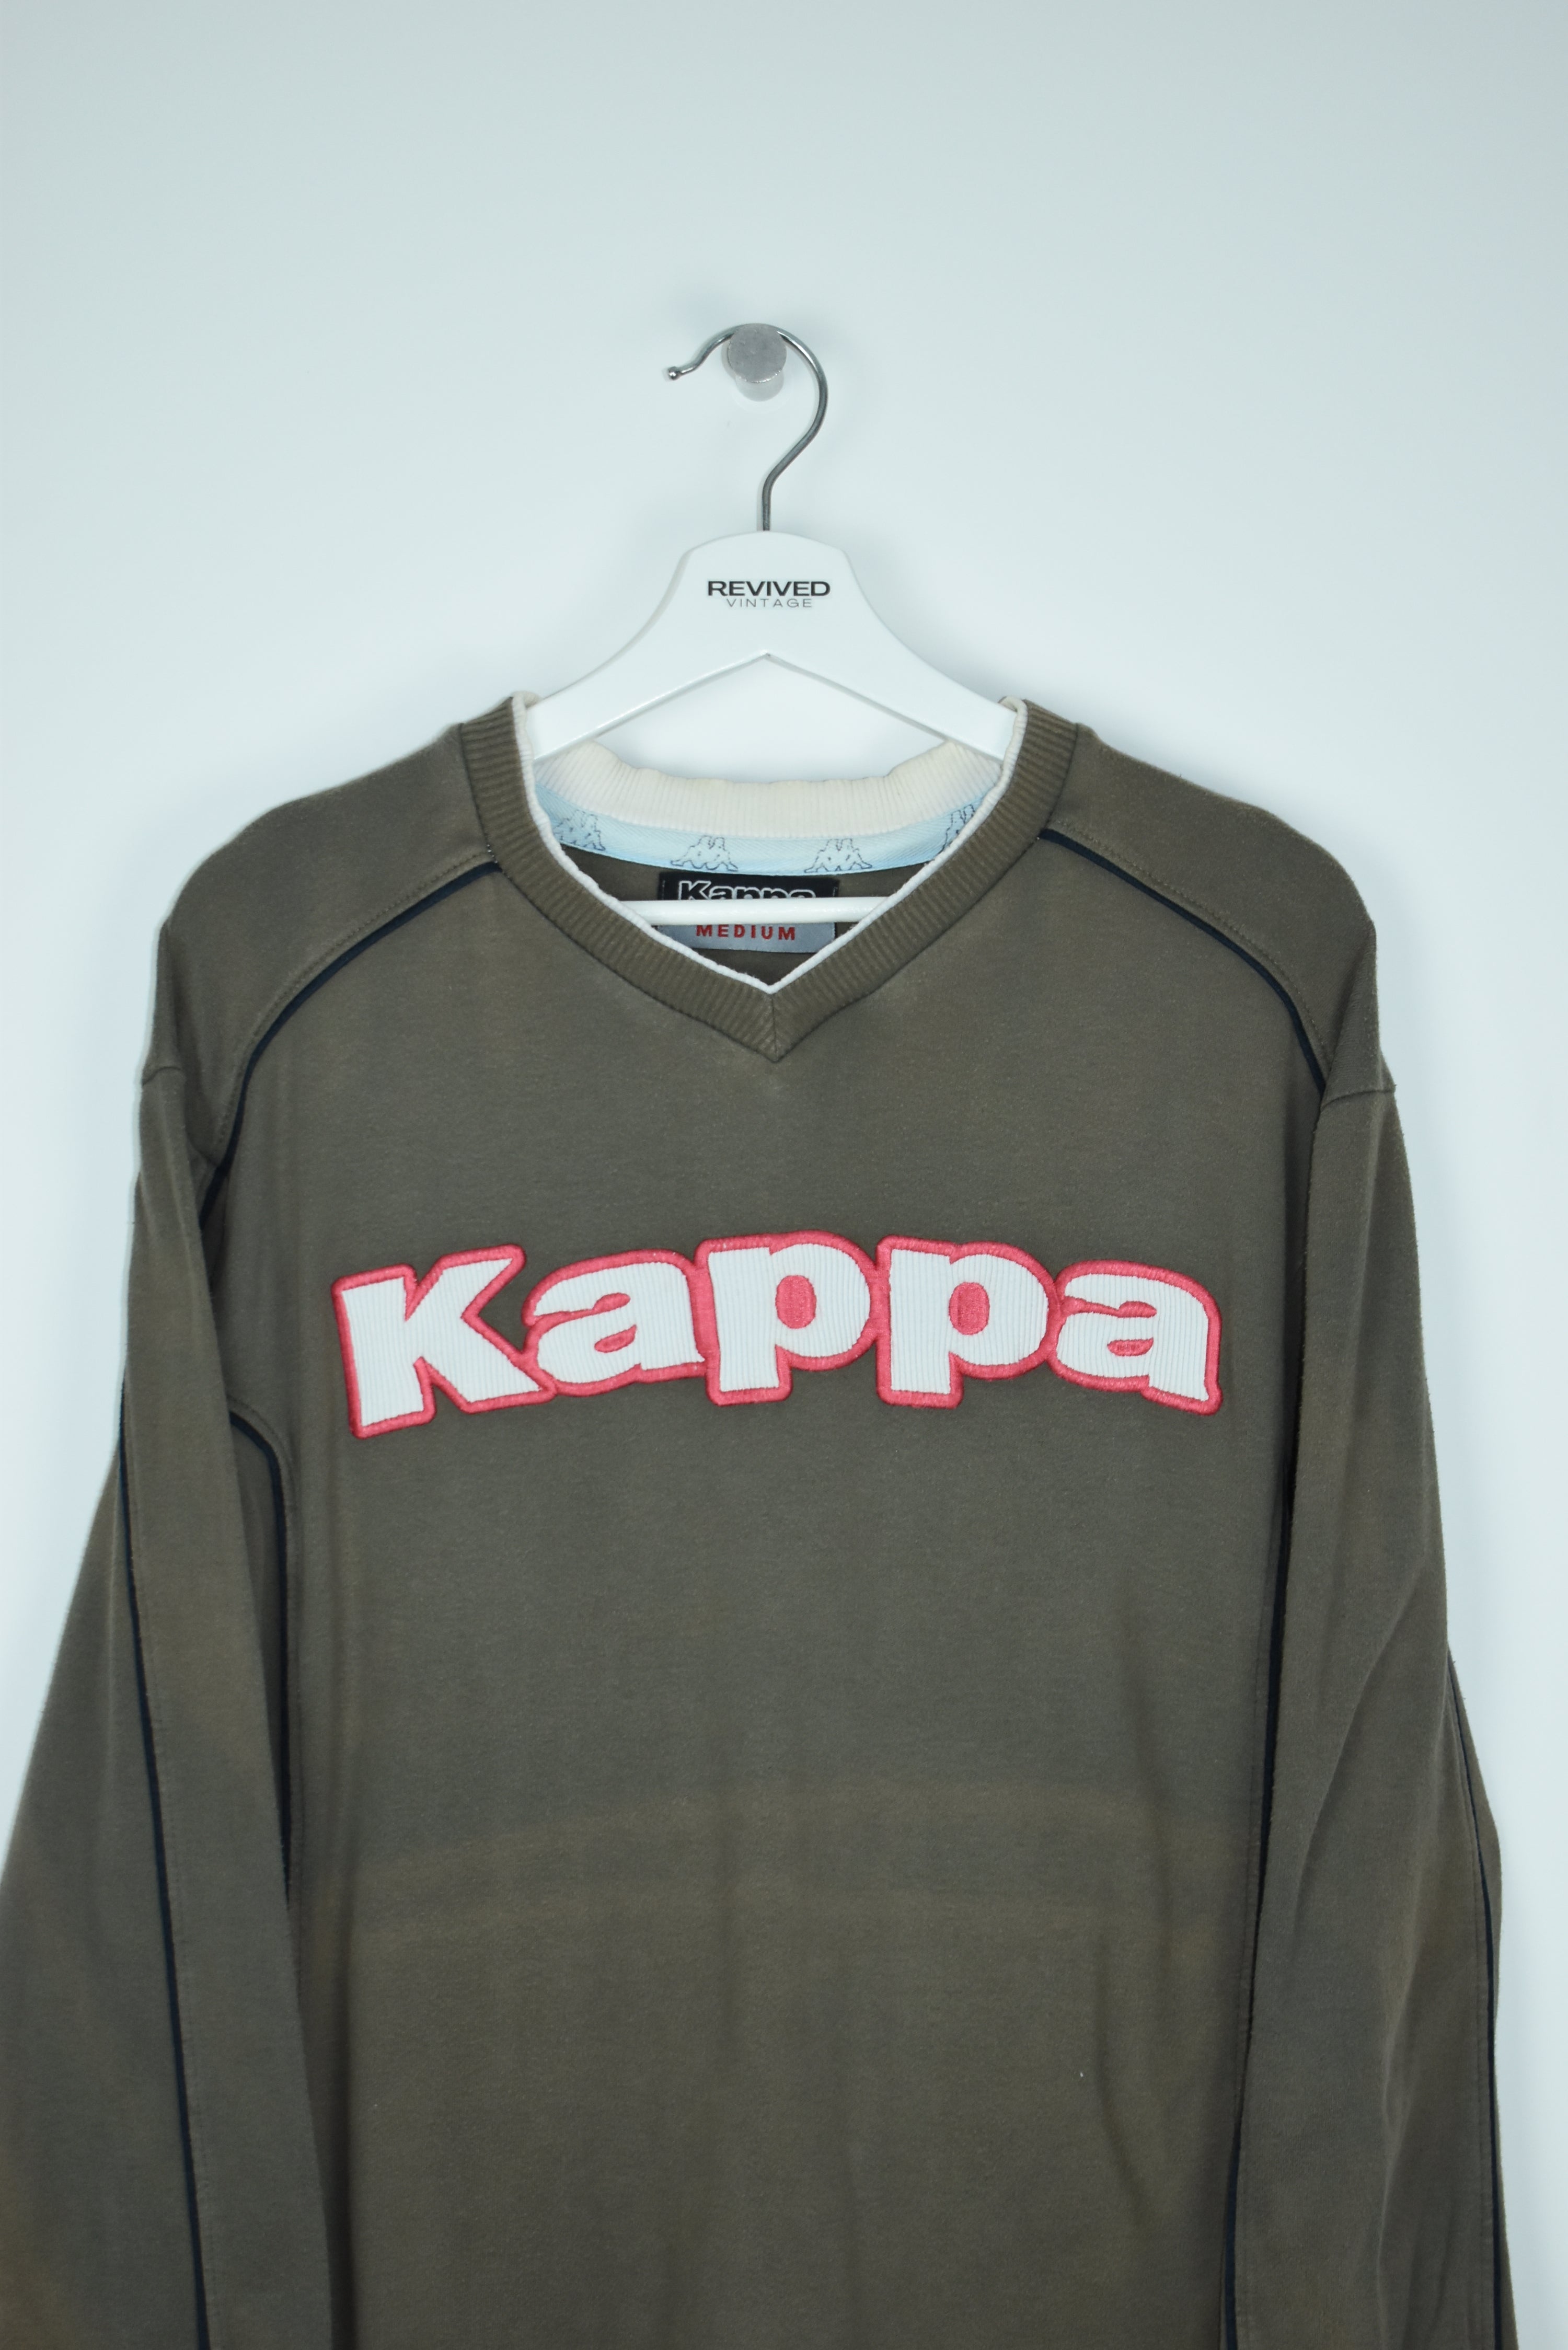 Vintage Kappa Embroidery Spellout Sweatshirt Medium